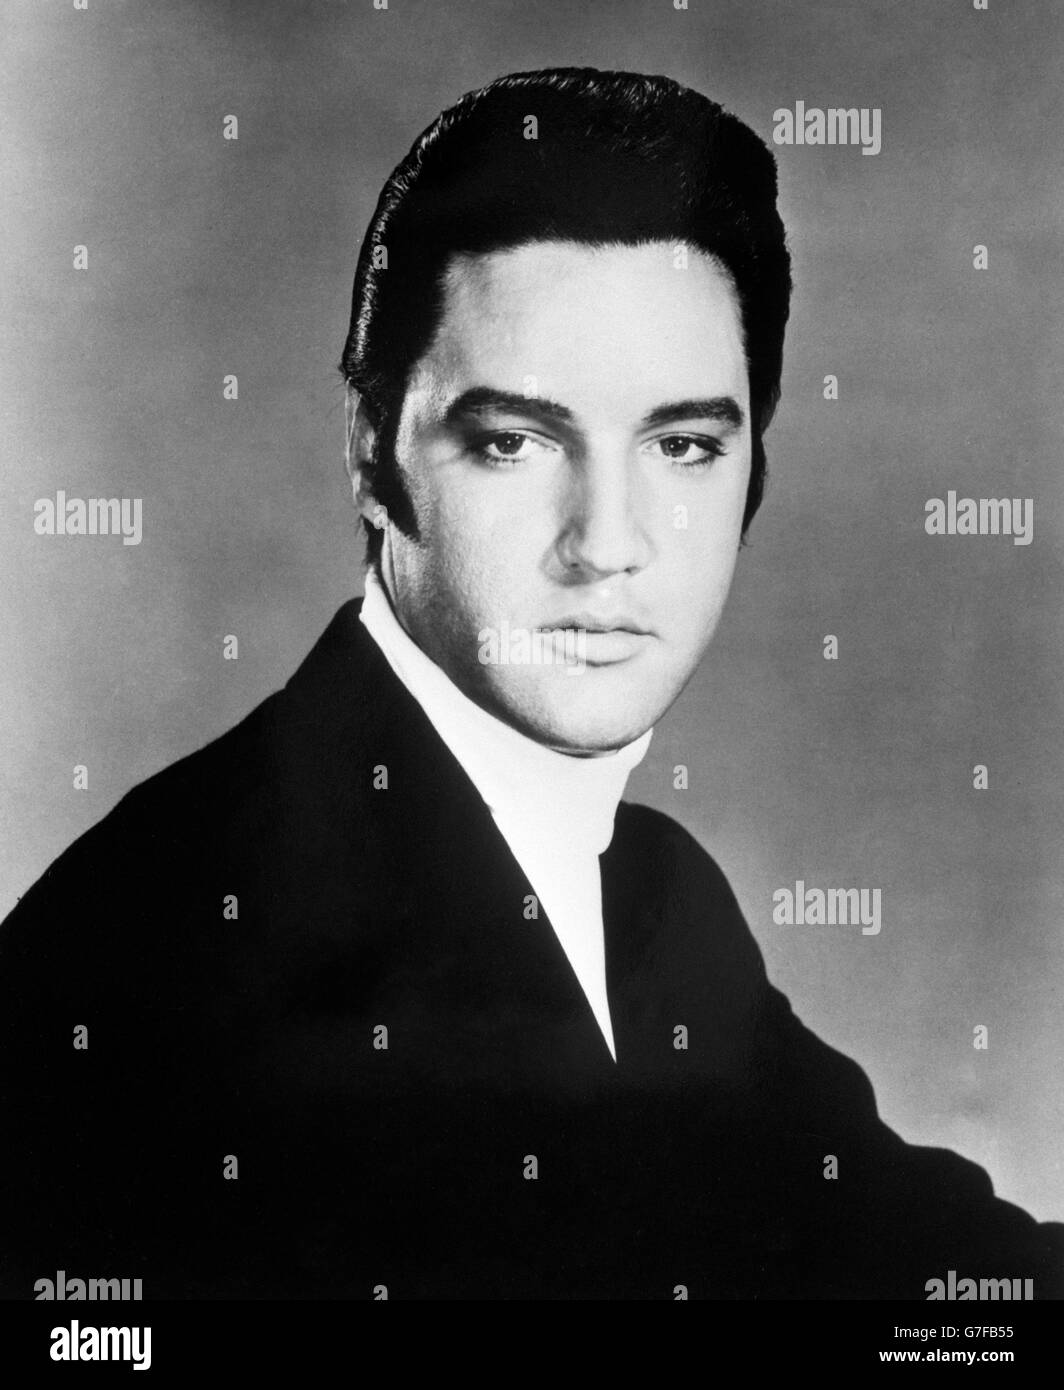 Music, Elvis Presley. Elvis Presley. Date unknown. Stock Photo